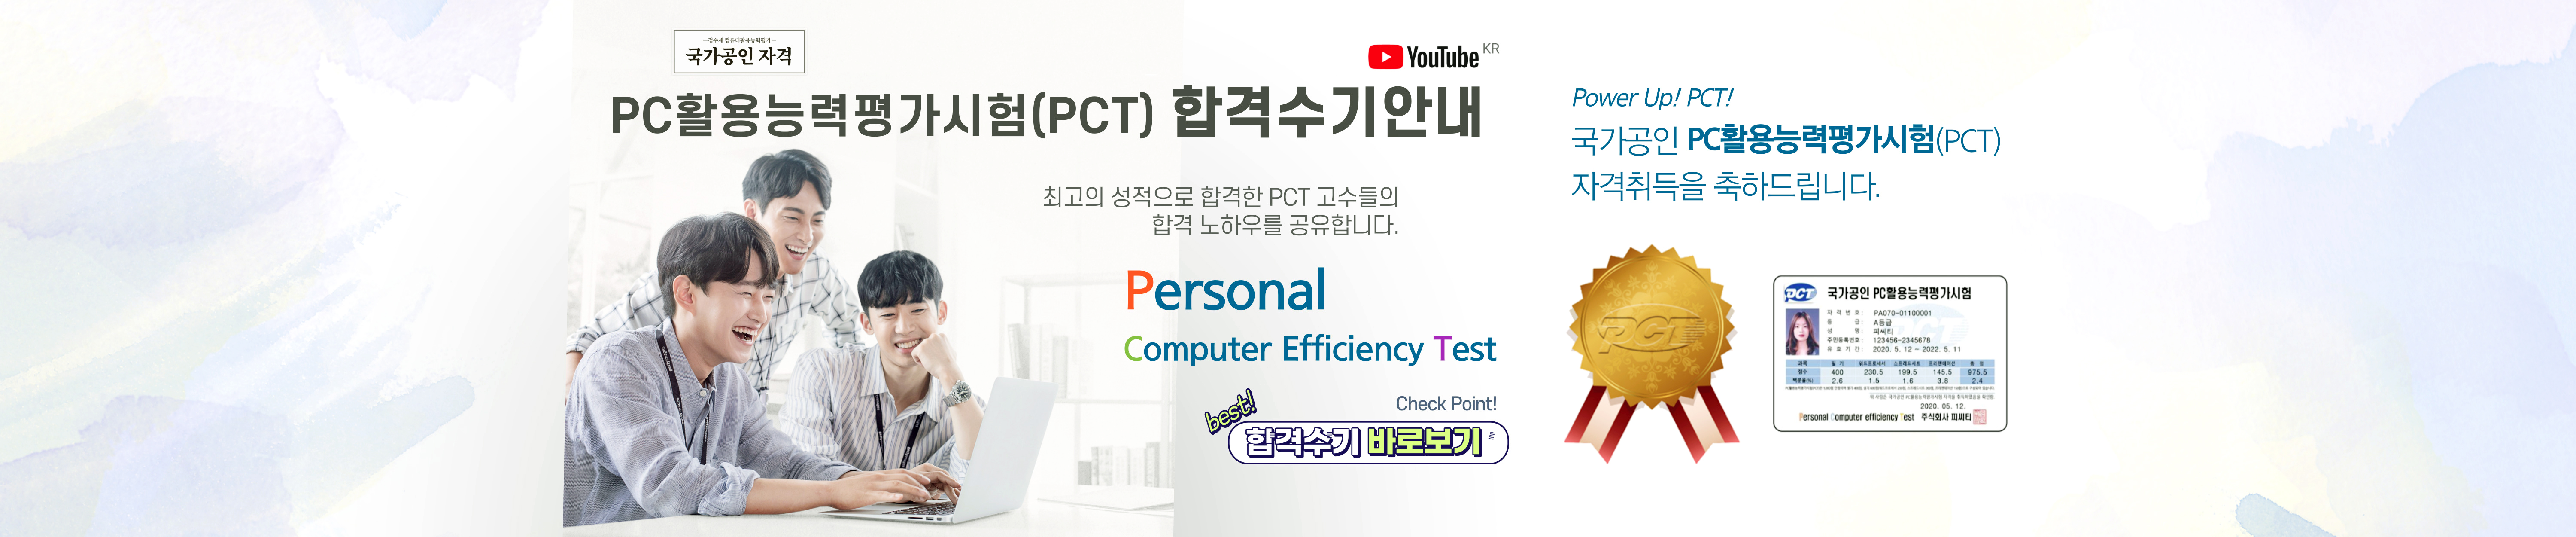 PC활용능력평가시험(PCT) 유튜브 합격수기안내